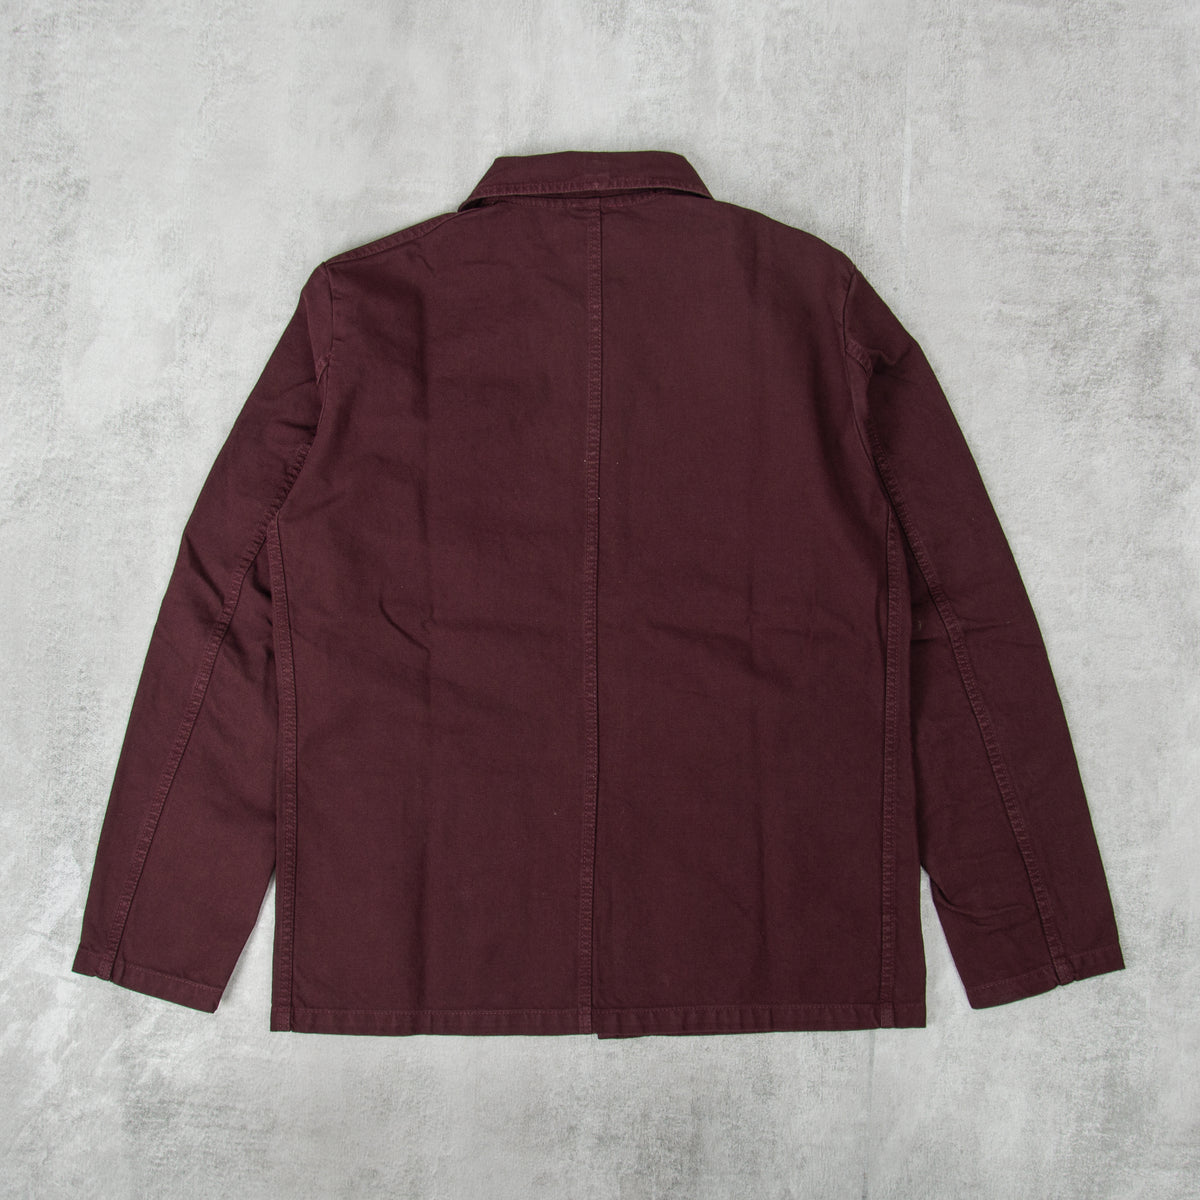 Buy the Vetra Twill Work Jacket Style 5C - Plum @Union Clothing | Union ...